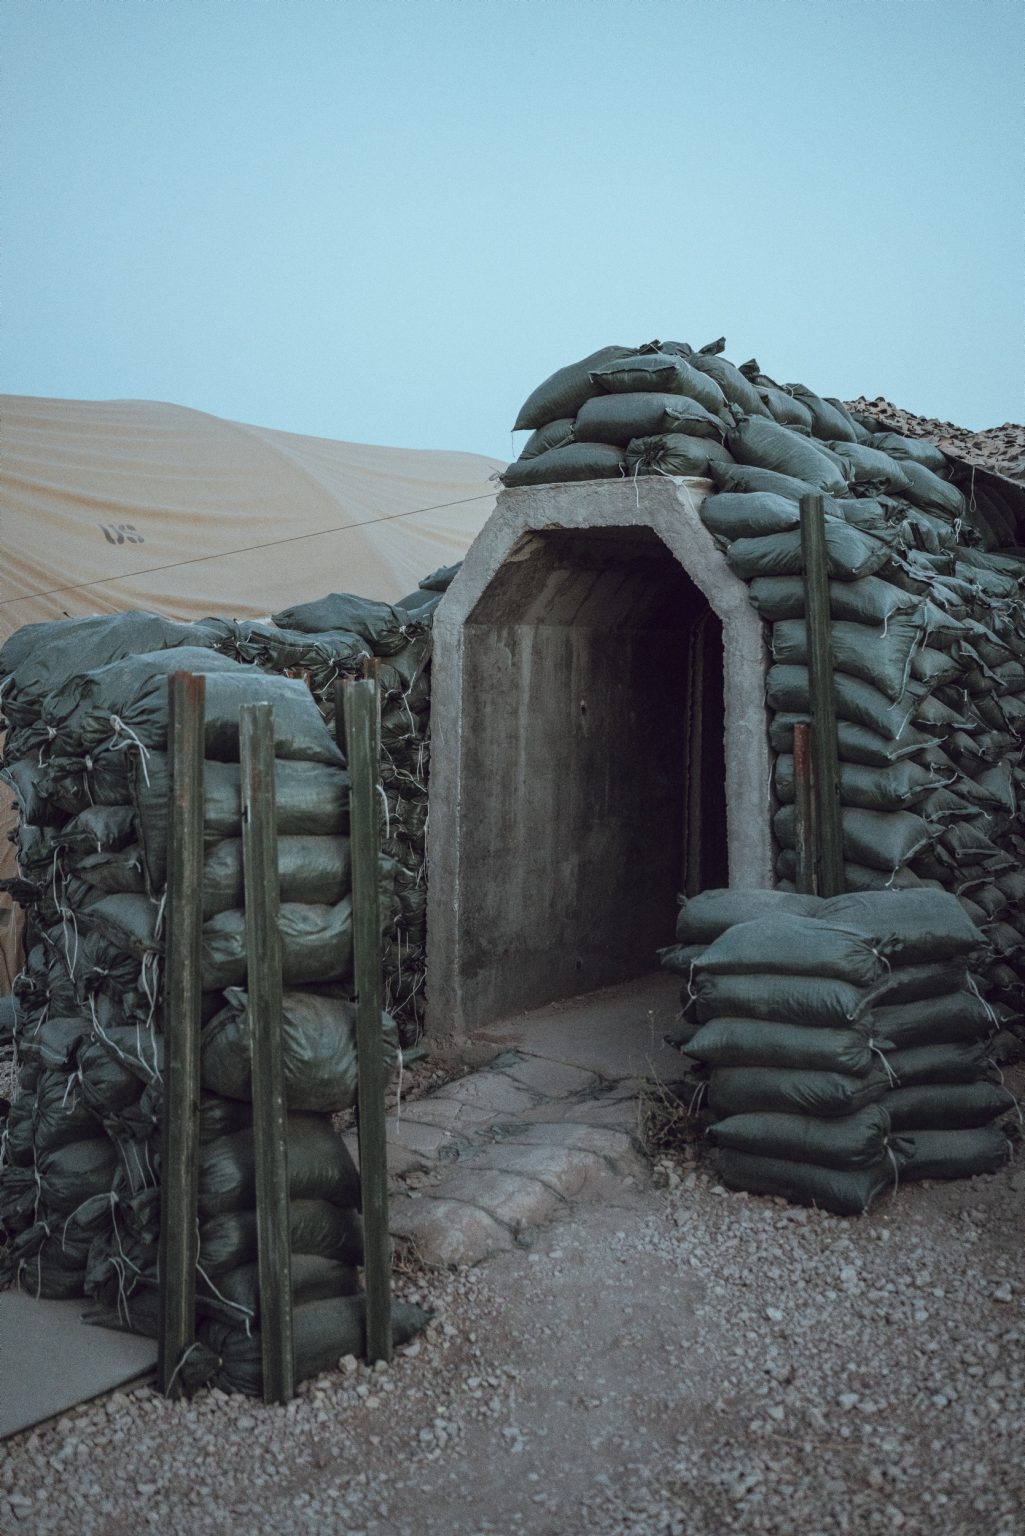 SYRIA. August 26, 2021 - The entrance of a bunker in a remote U.S. Army combat outpost in northeastern Syria, known as RLZ.

SIRIA. 26 agosto 2021 - L'ingresso di un bunker in un avamposto dell'esercito americano nel nord-est della Siria, noto come RLZ.